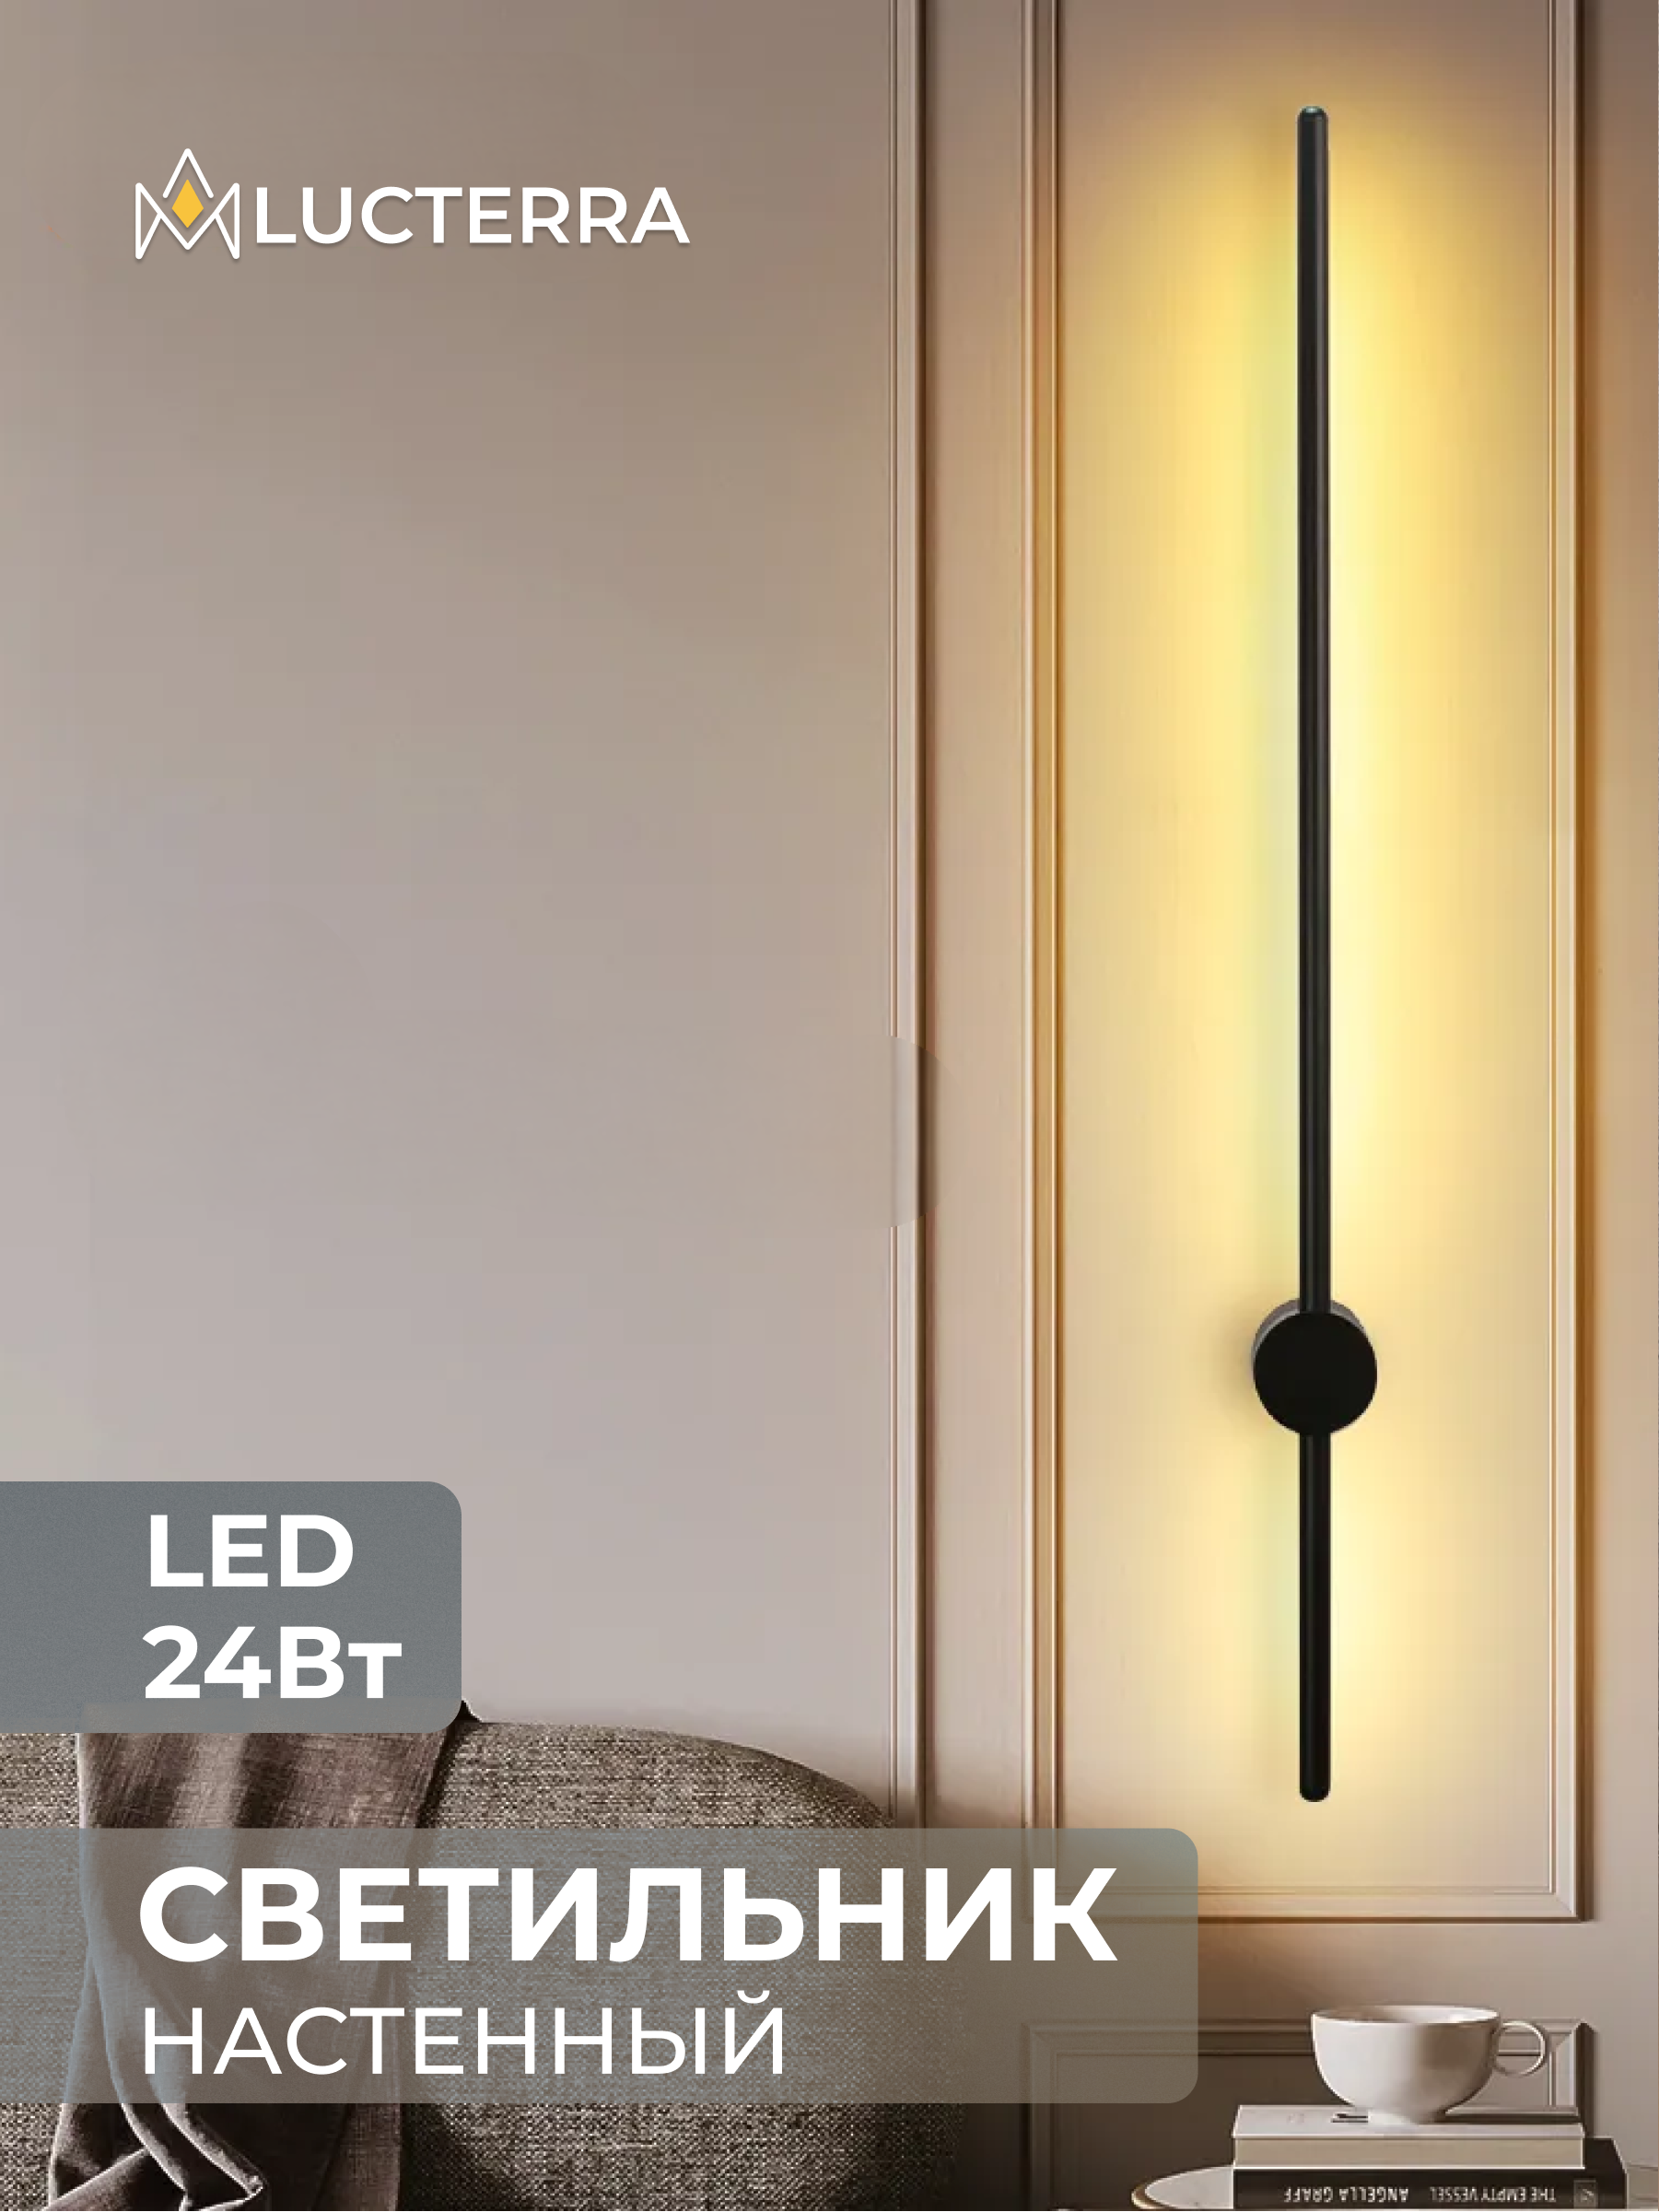 Бра - настенные светильники на Кухню: купить в интернет-магазине в Москве - Lustrof